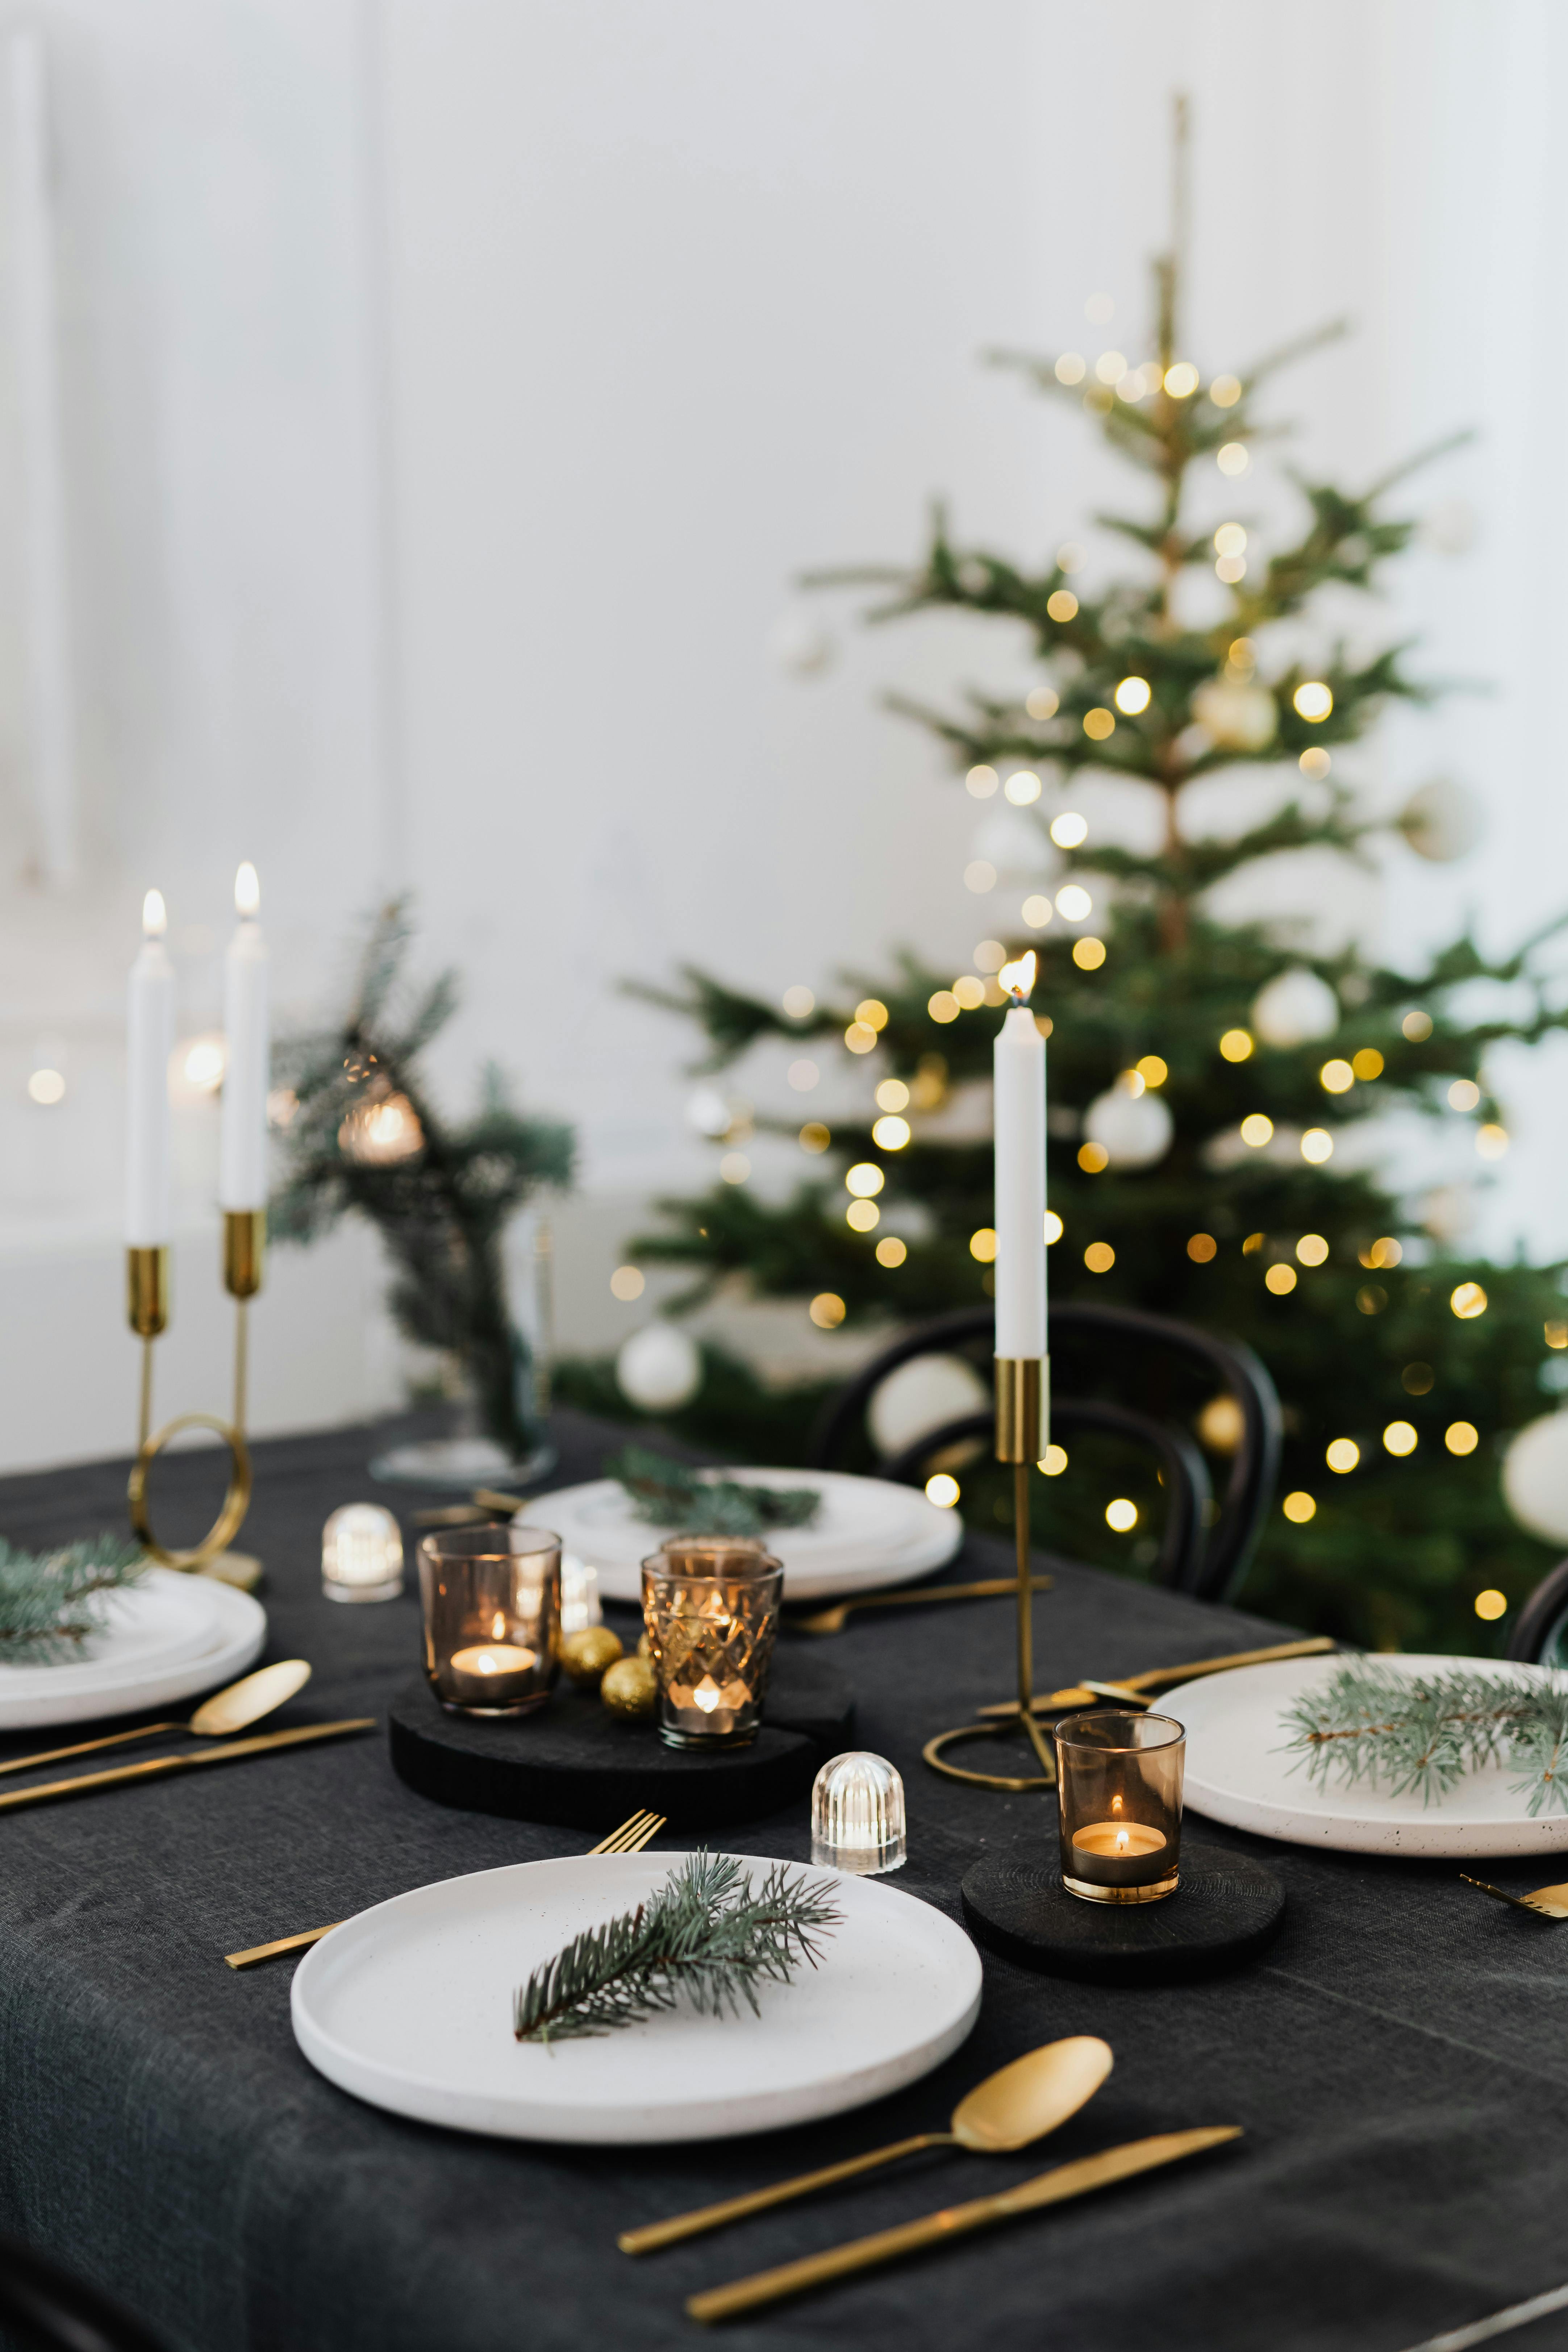 table set before christmas dinner